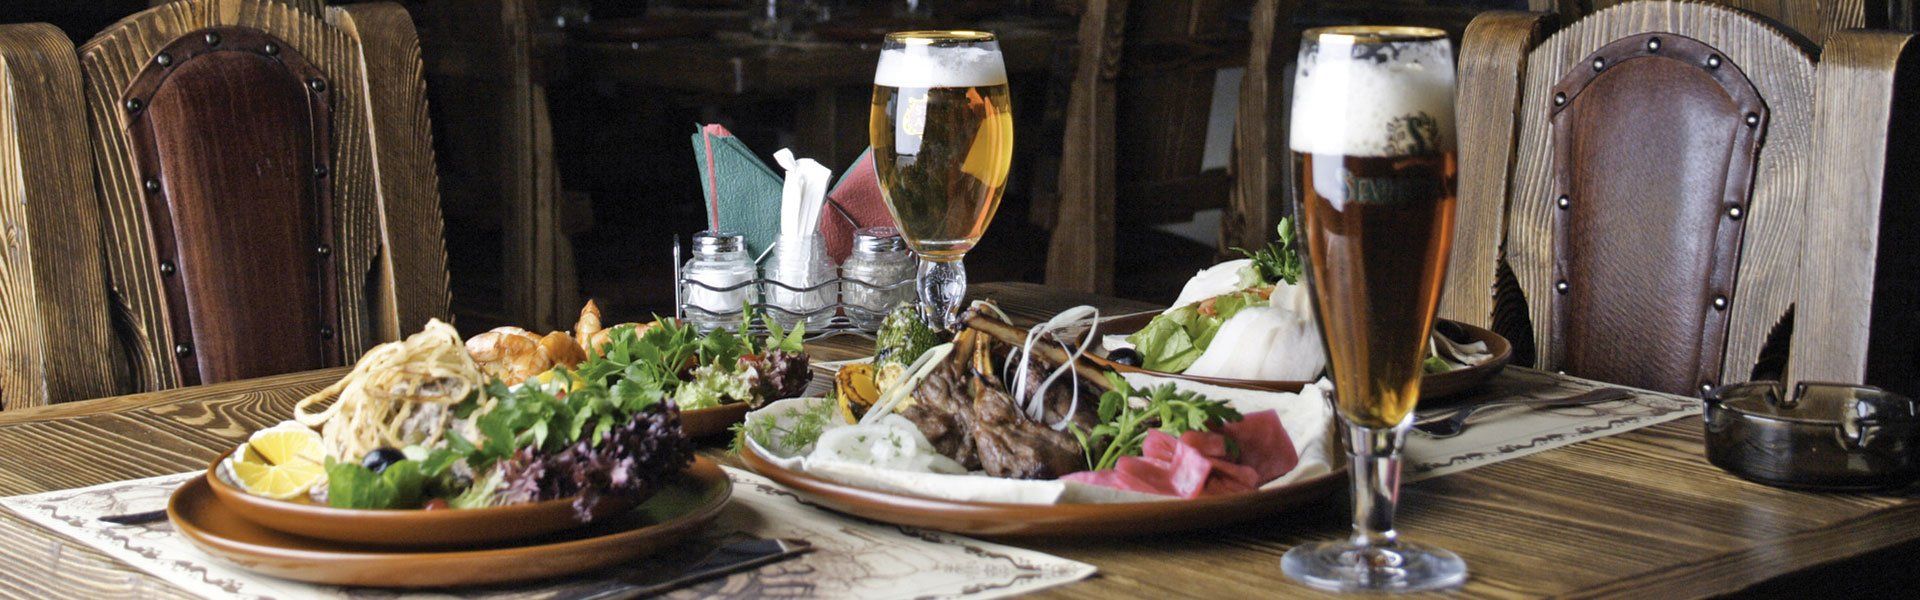 Pub food | The Bull Inn, St Paul's Cray